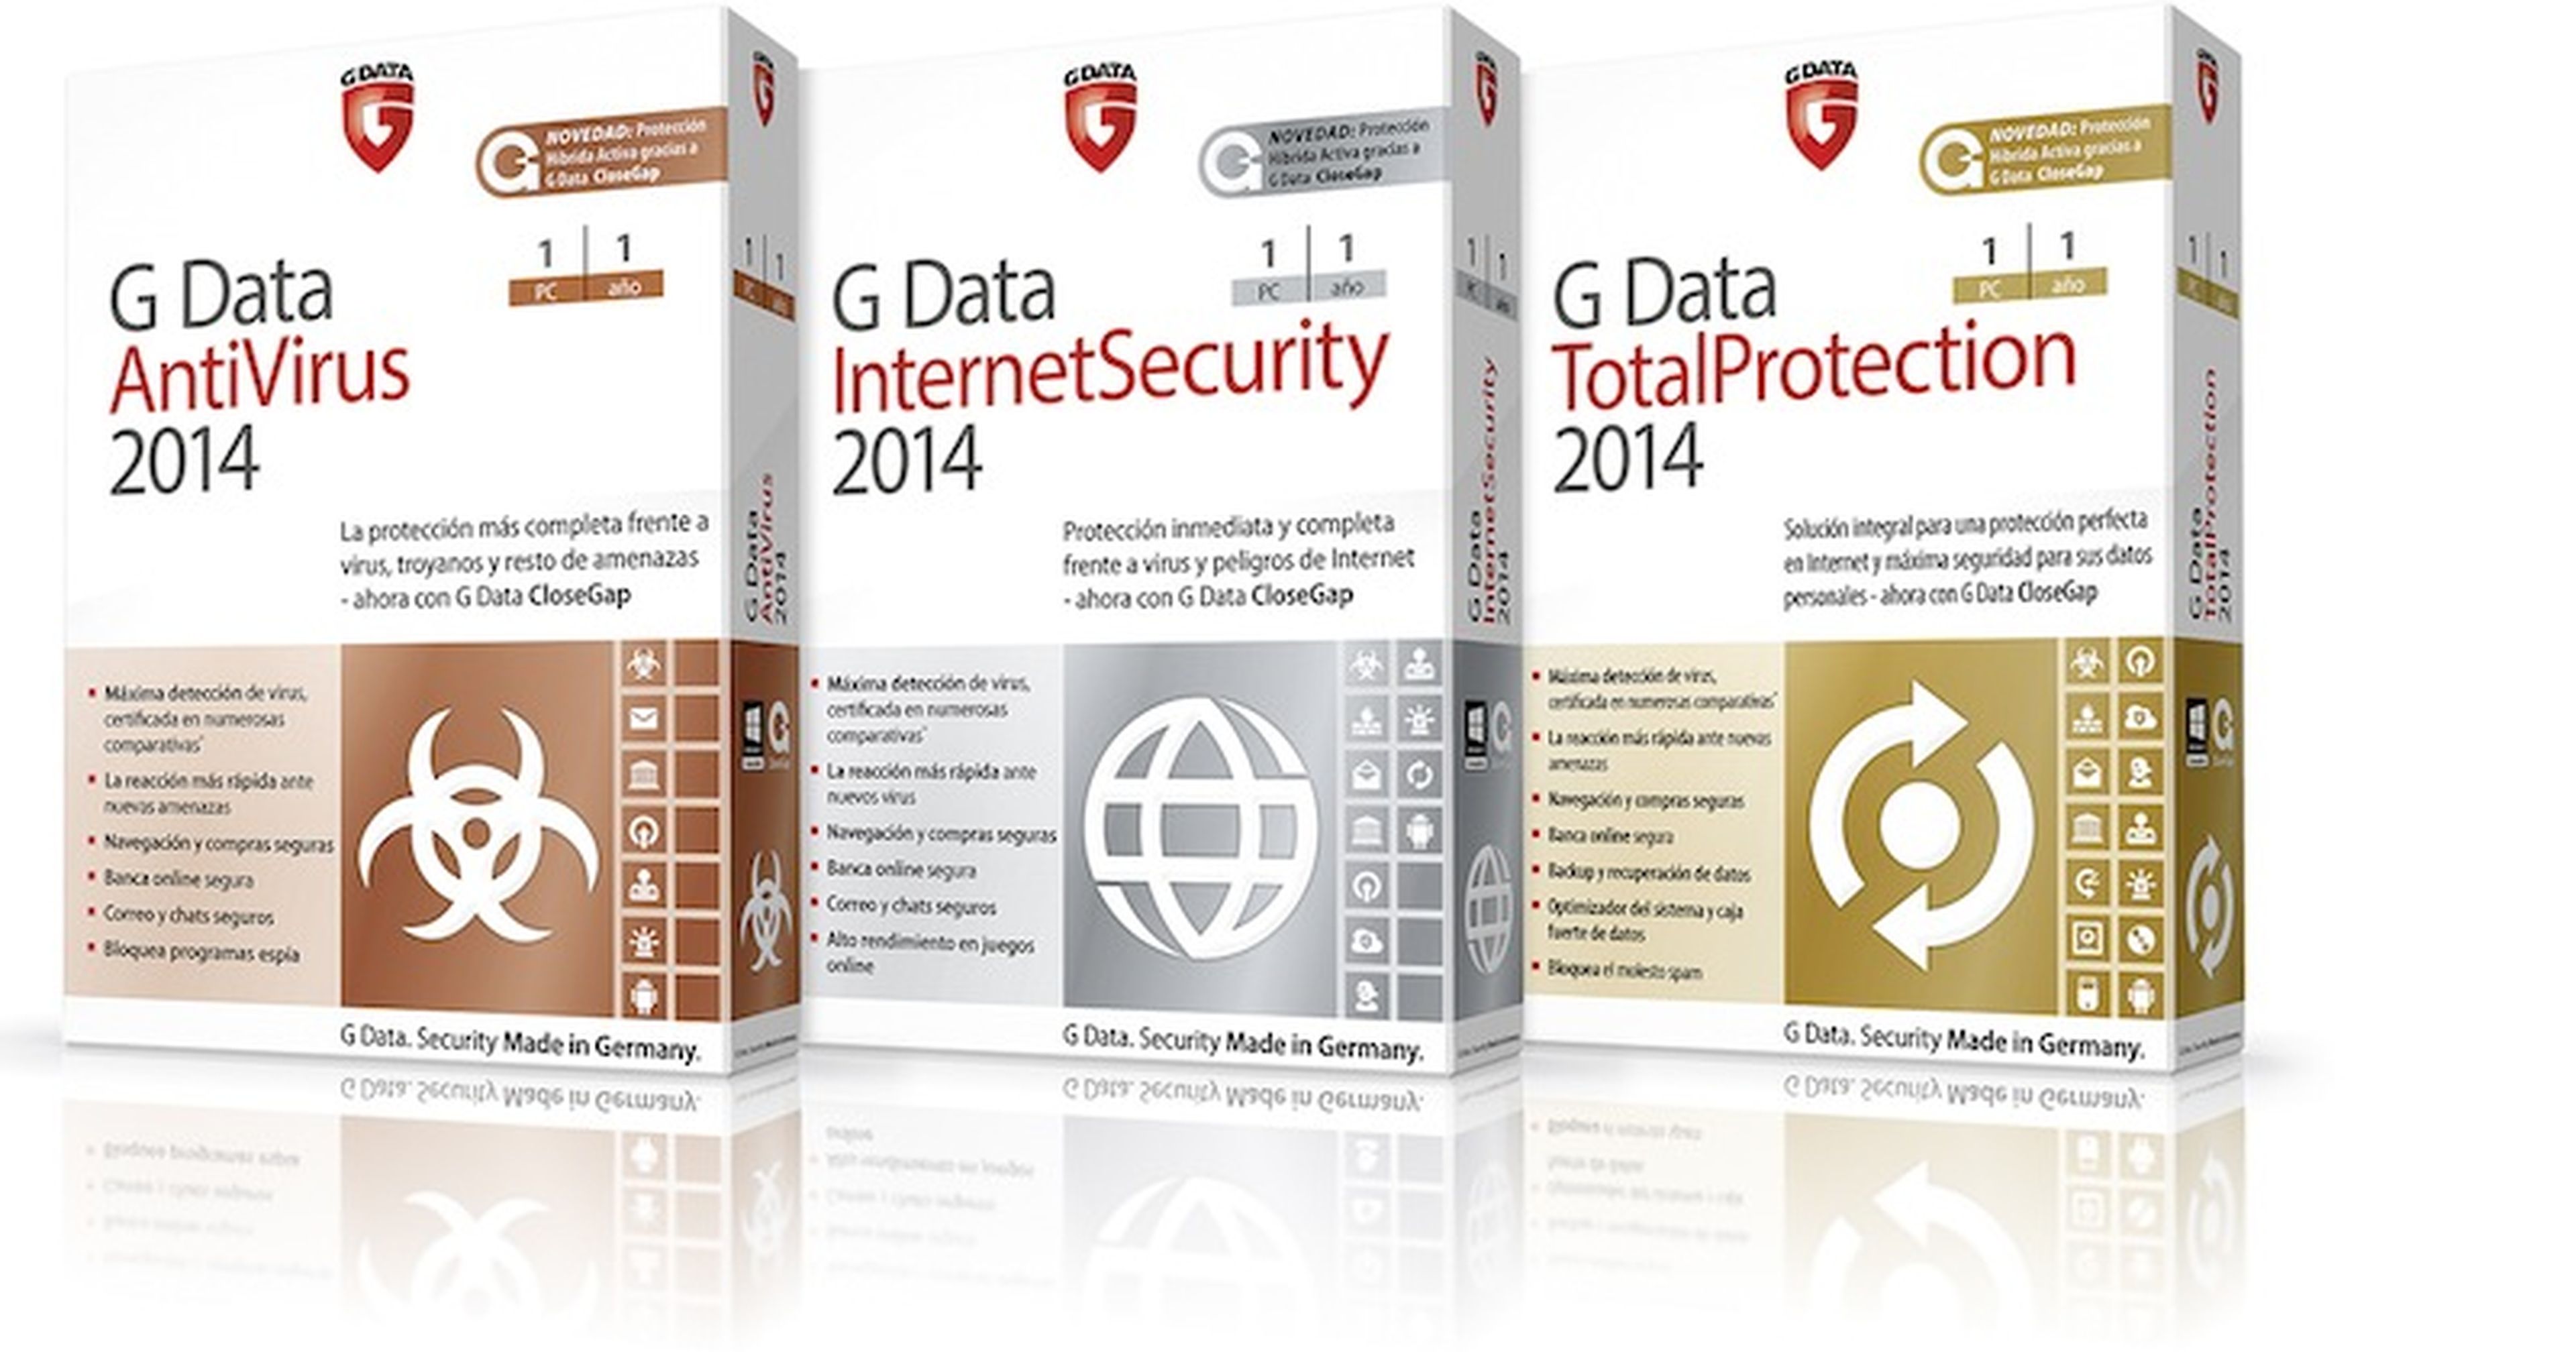 G Data 2014 está disponible en 3 versiones: Antivirus, Internet y Total Proteccion